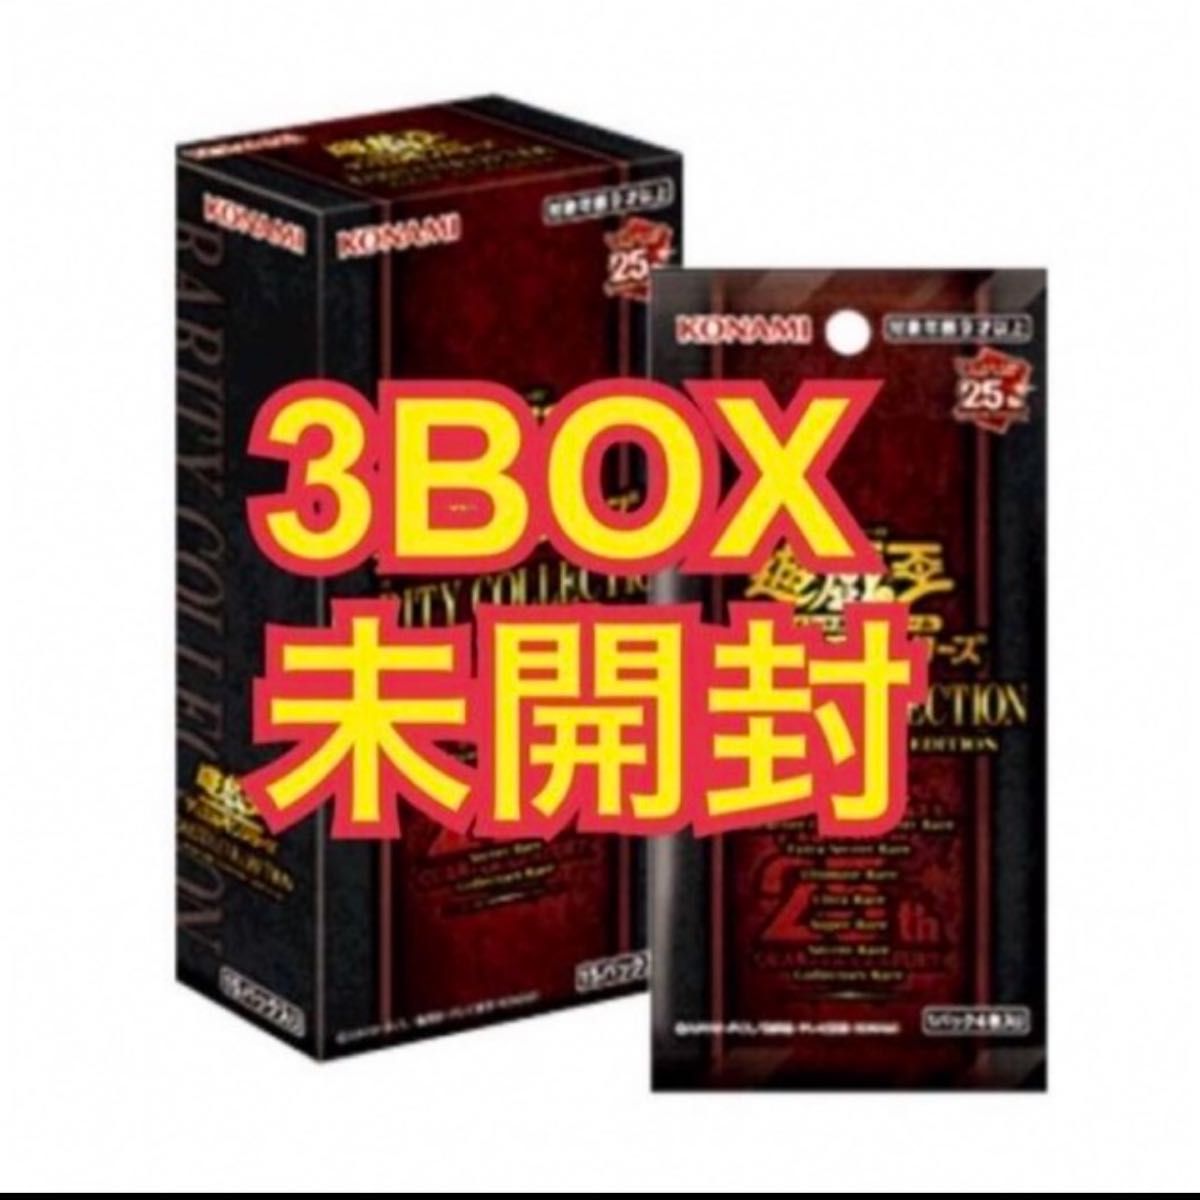 遊戯王 レアリティコレクション3BOX-